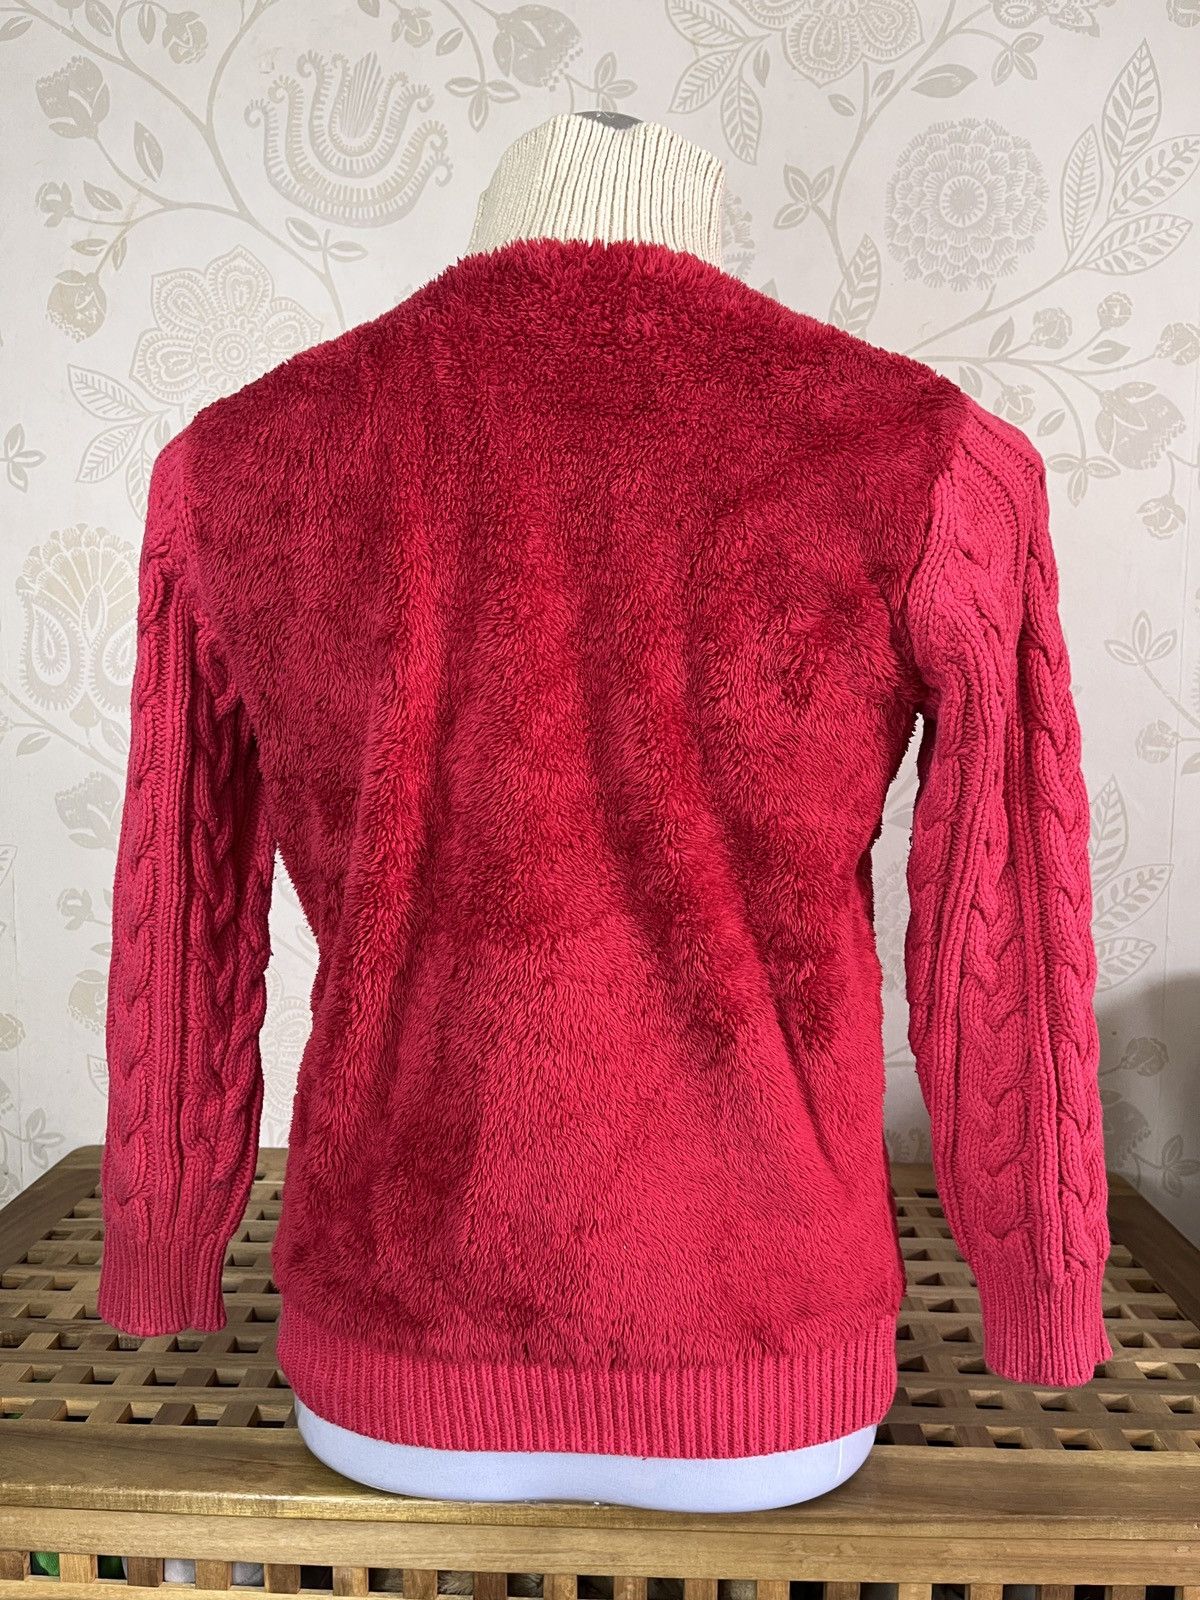 Undercover X Uniqlo Sweater Rare Red Colour - 4